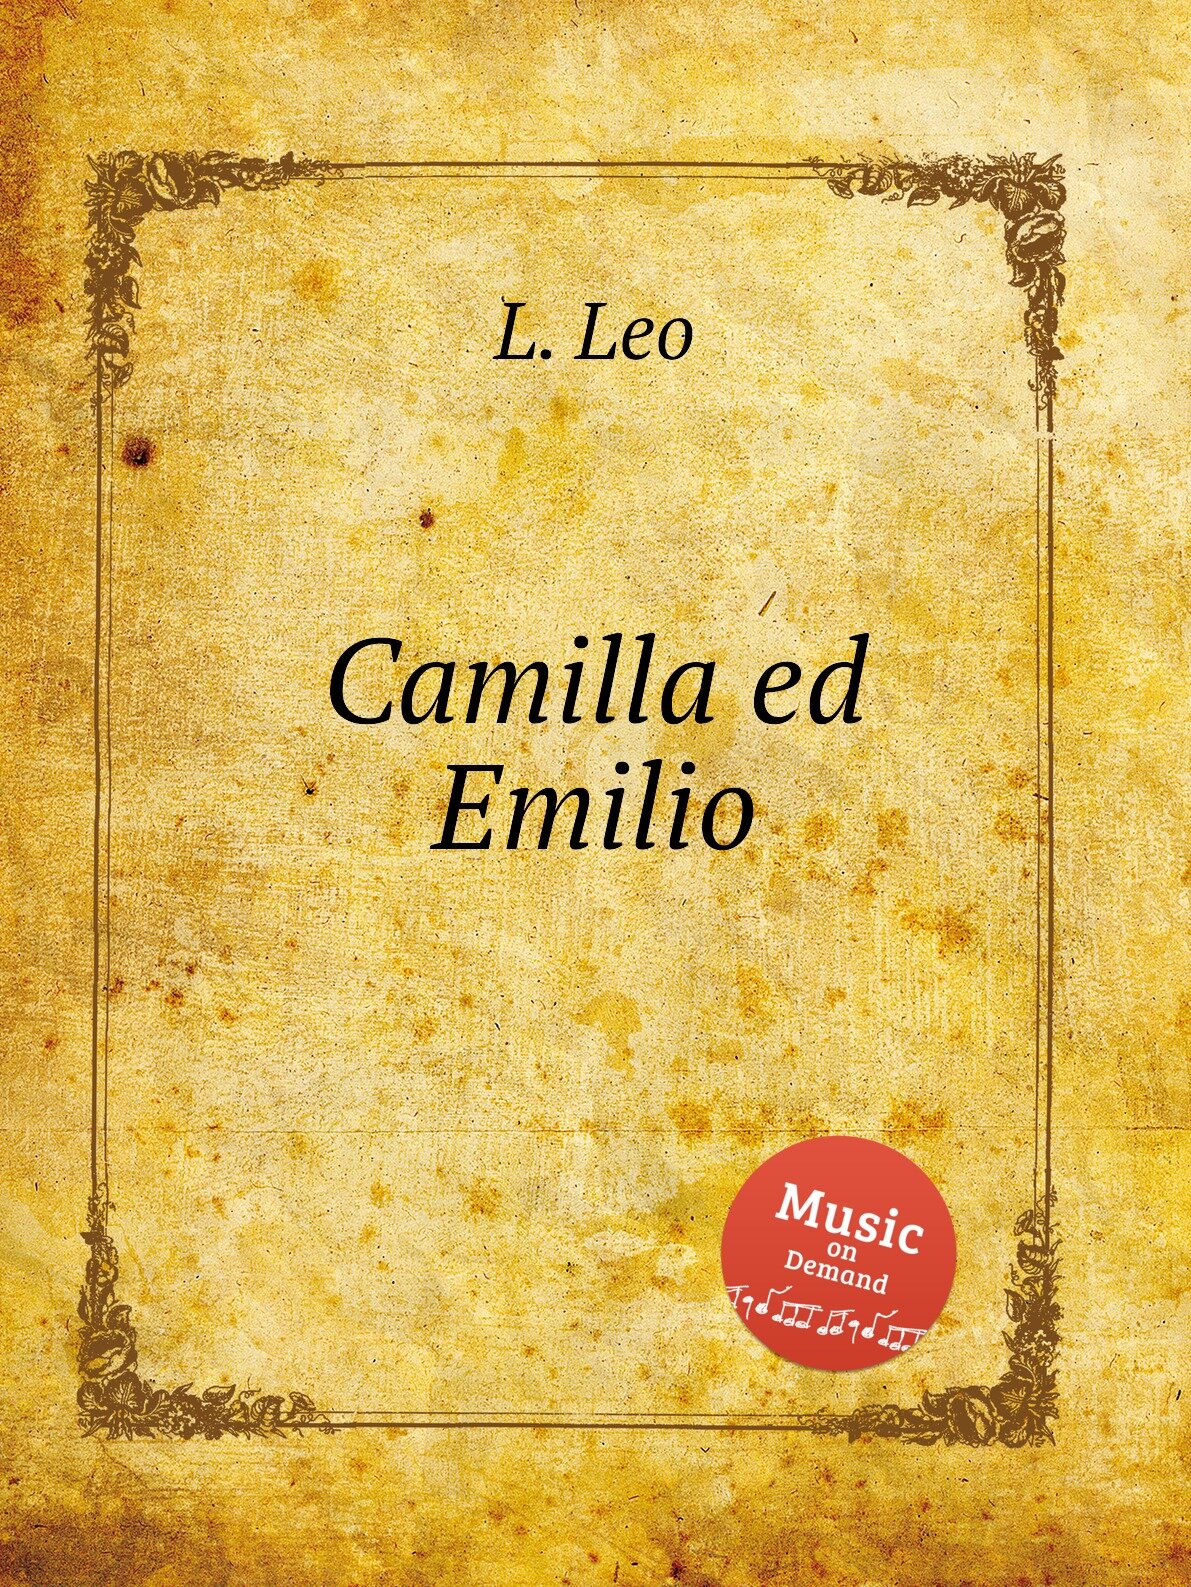 Camilla ed Emilio